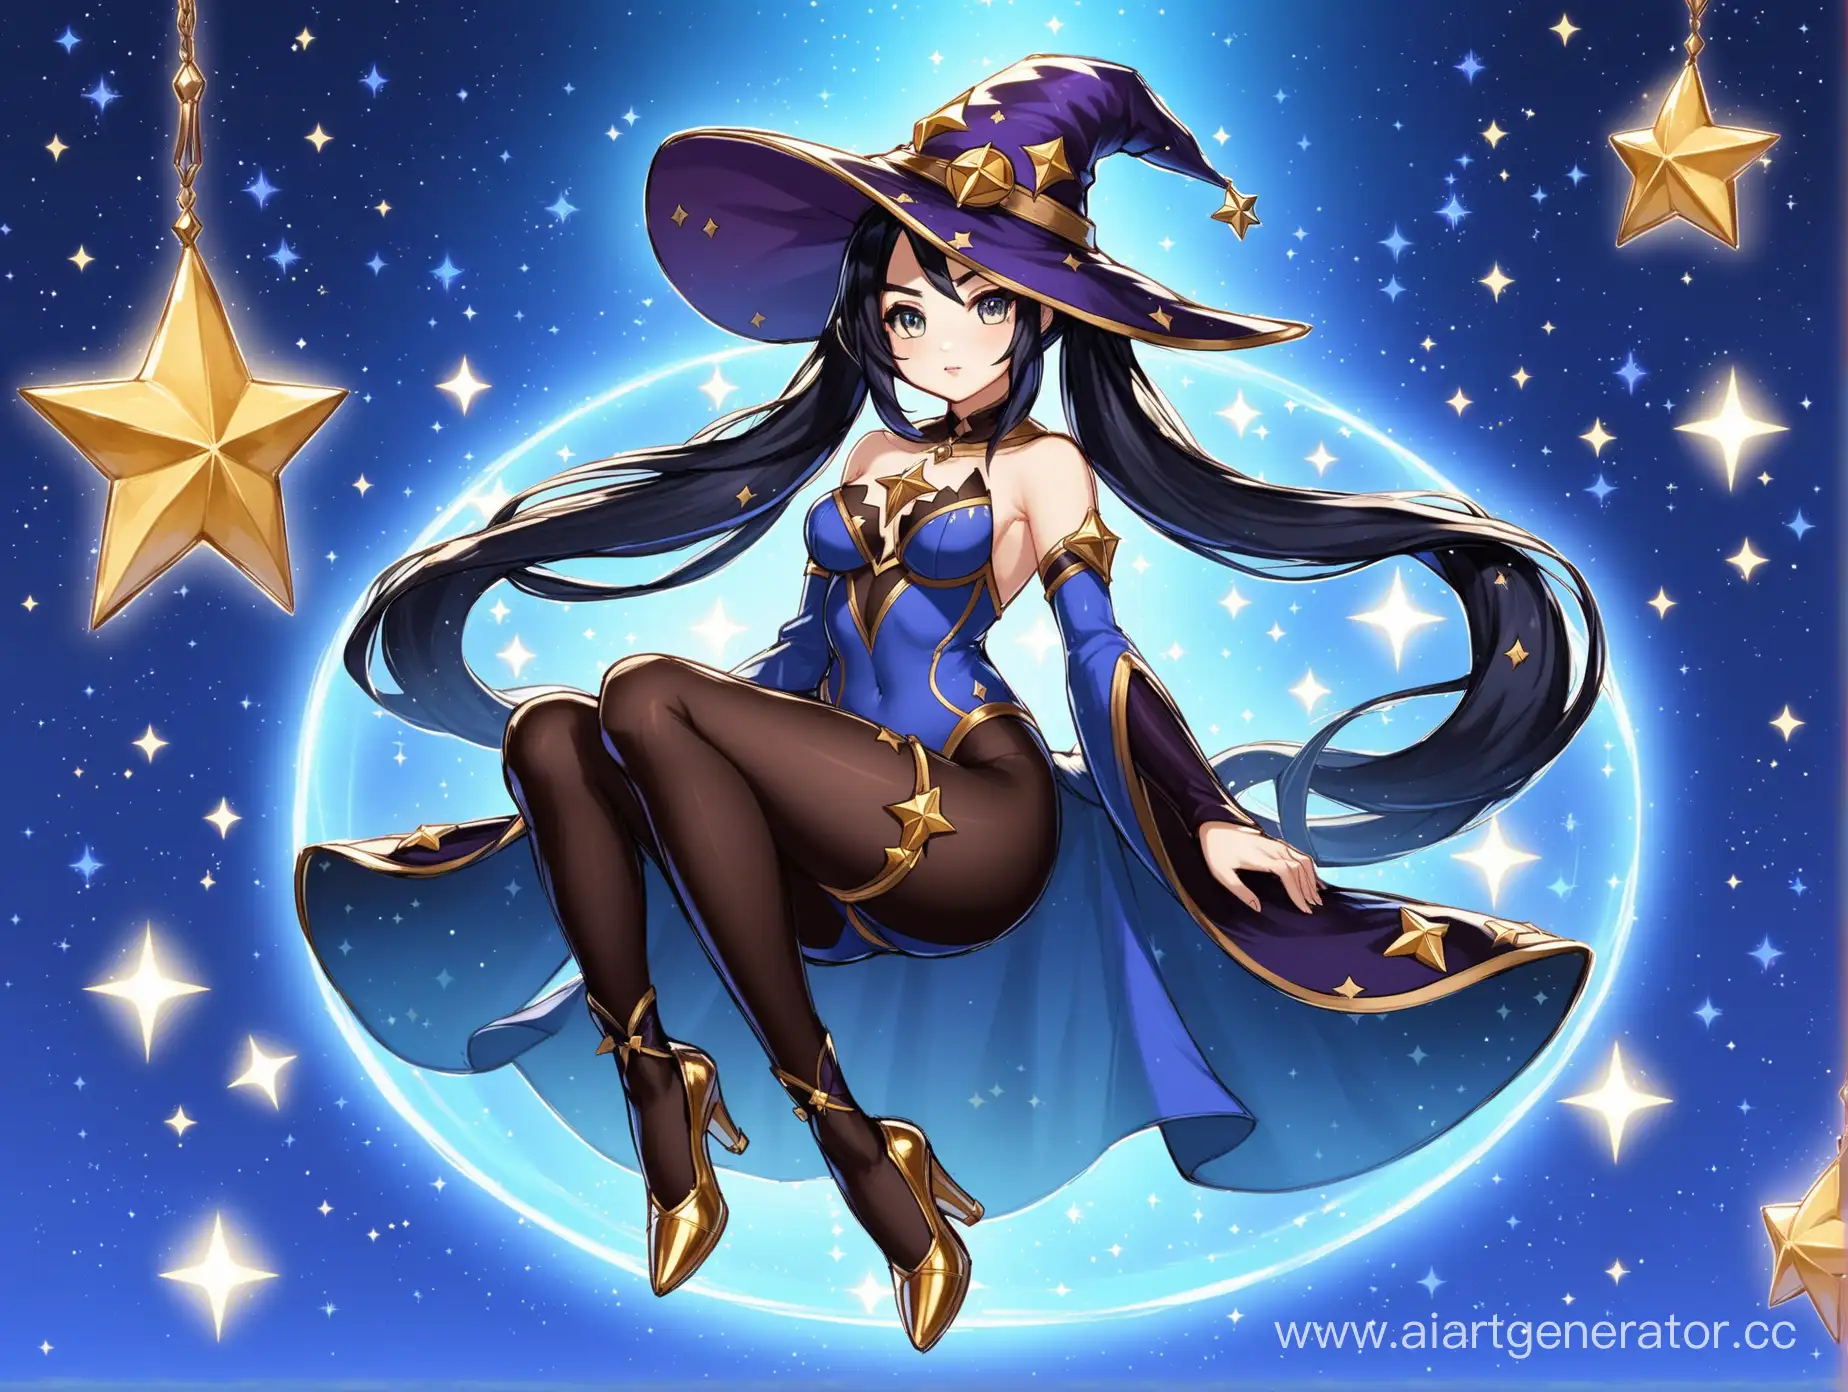 Мона Мигестус из Genshin Impact: в чёрных полупрозрачных колготках, в синем купальнике со звездами, с черными волосами, с двумя длинными хвостиками, с золотыми туфельками на чуть высоких каблуках, с синей шляпой ведьмы и тоже с звездами